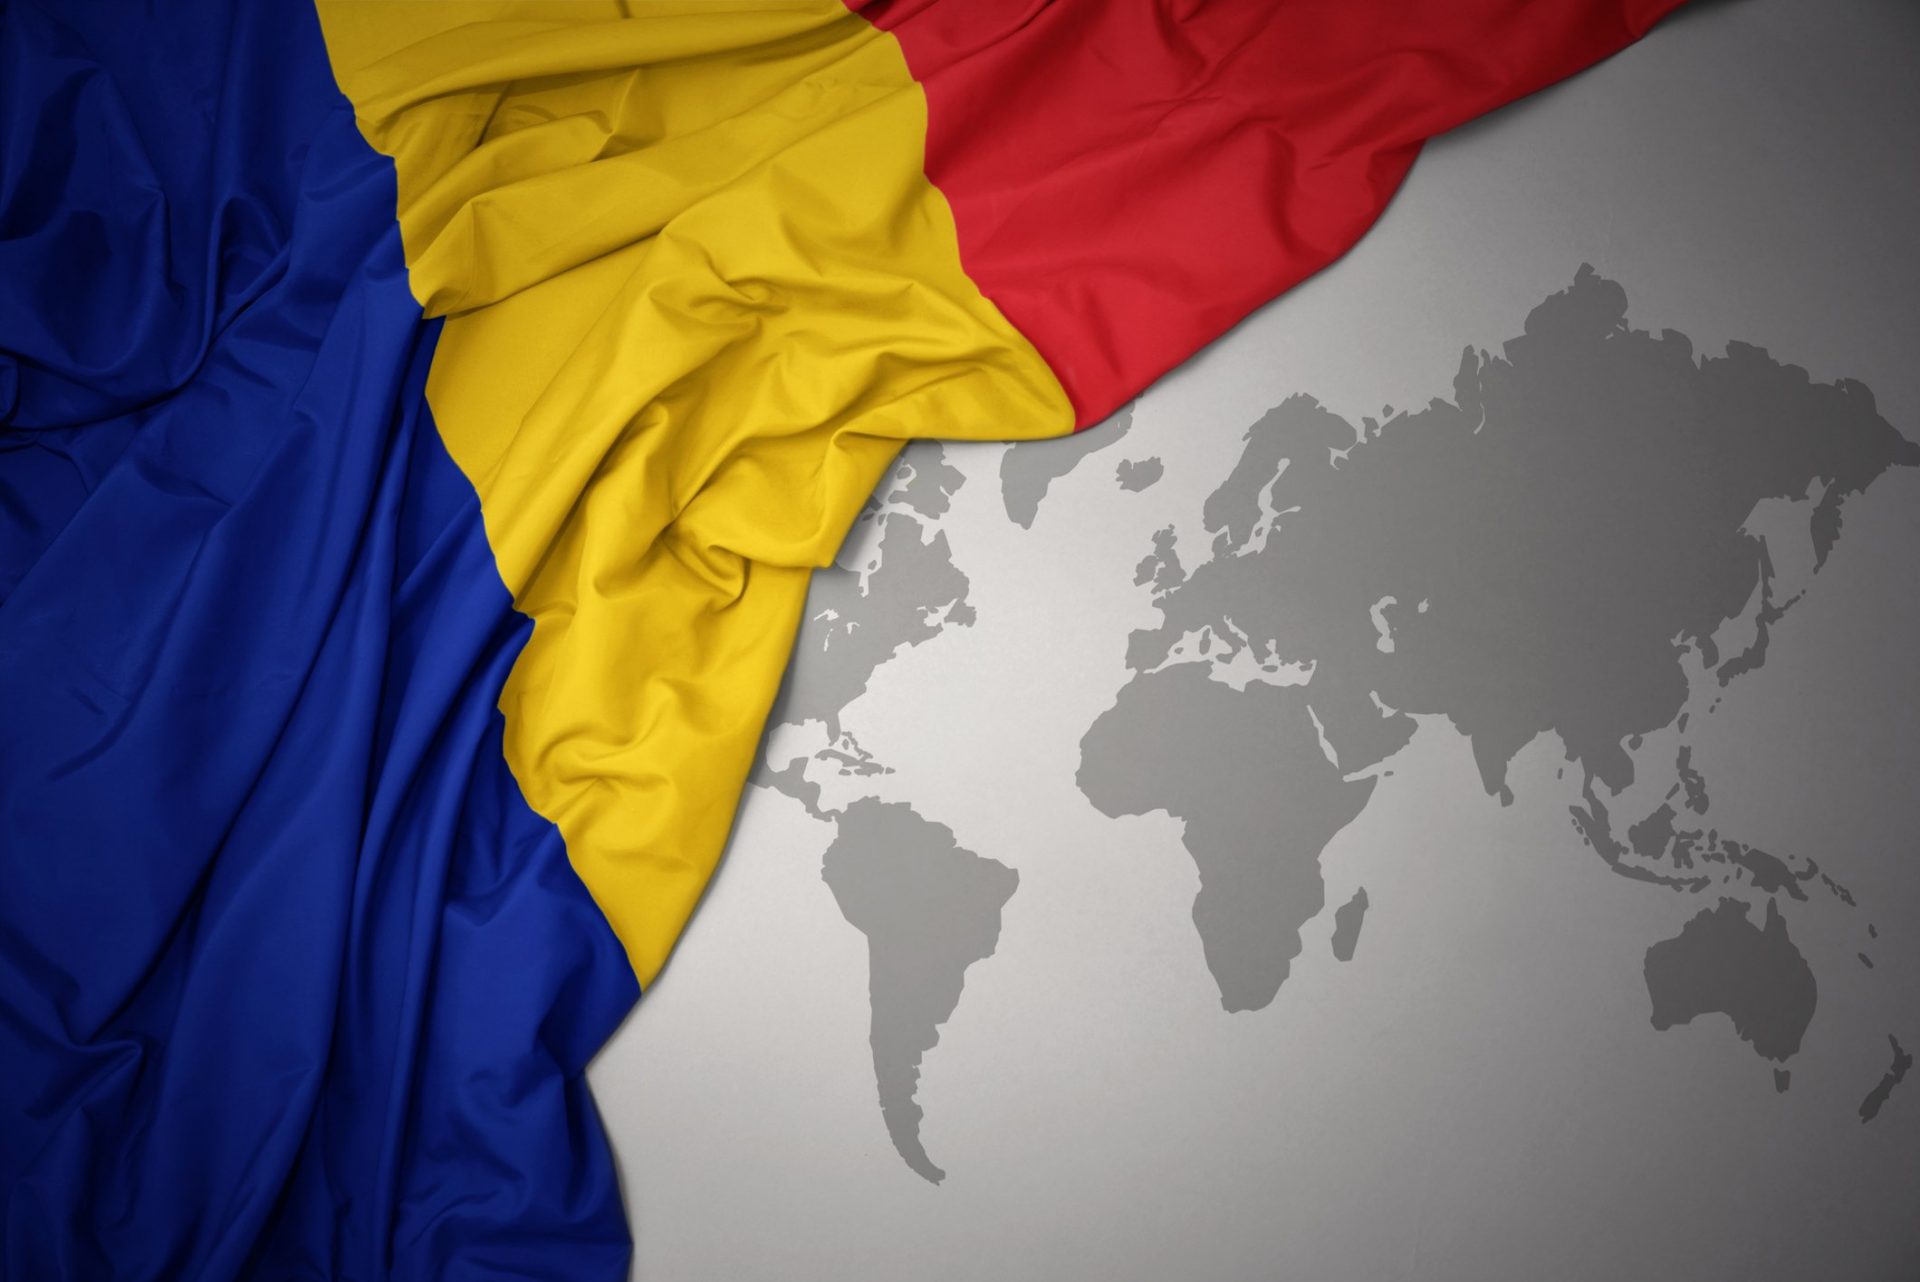 STUDIU. Publicul român este dominat de atitudini prooccidentale